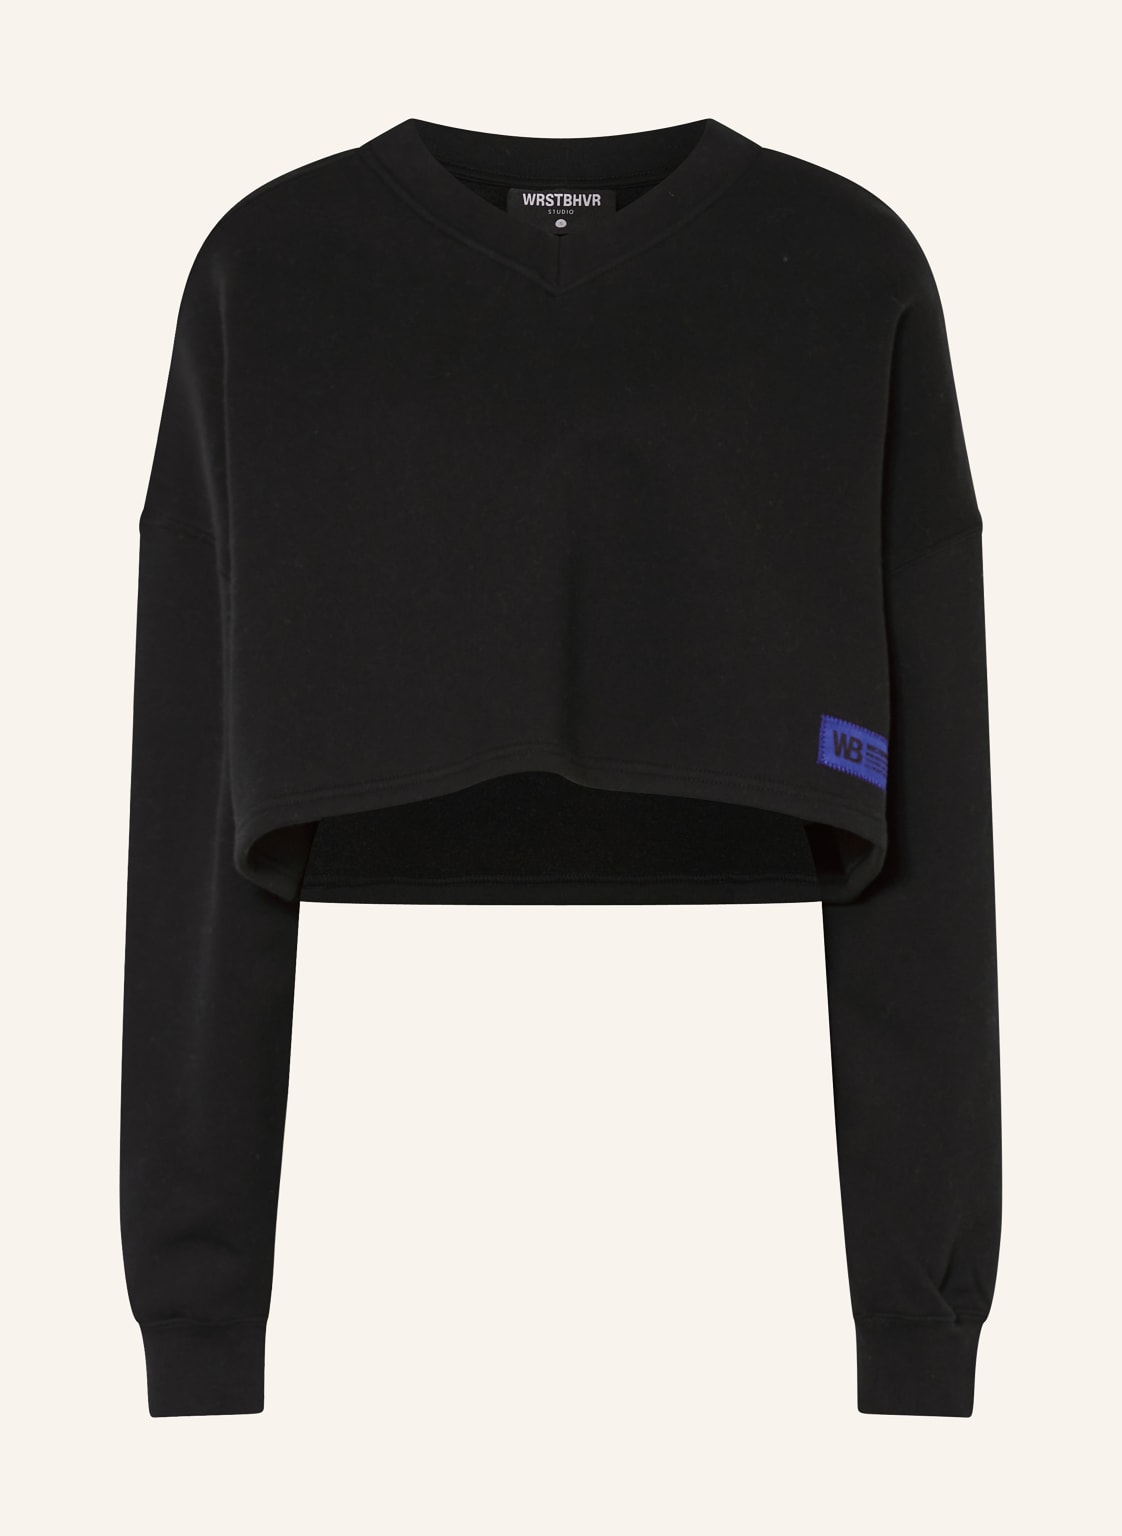 Wrstbhvr Cropped-Sweatshirt Slata schwarz von WRSTBHVR